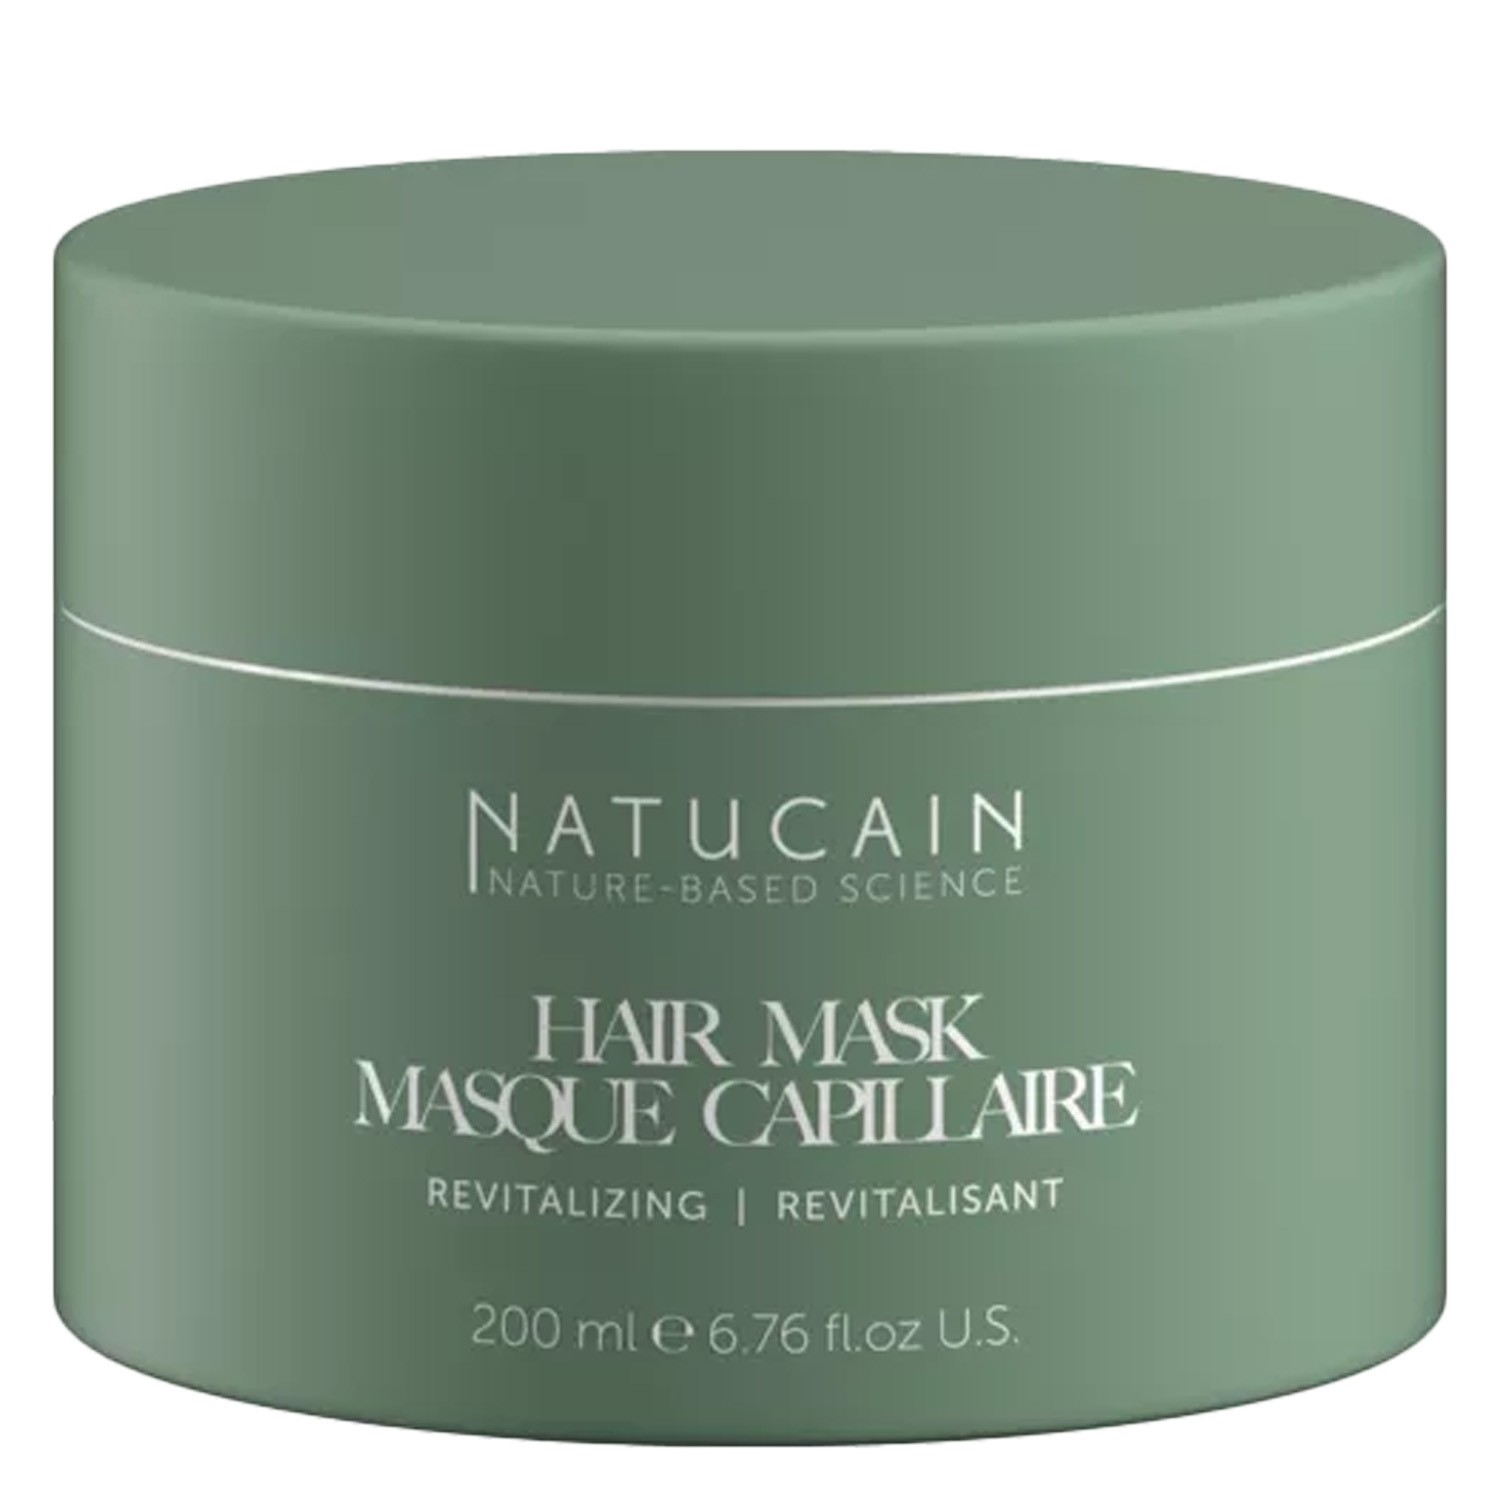 Produktbild von NATUCAIN - Revitalizing Hair Mask